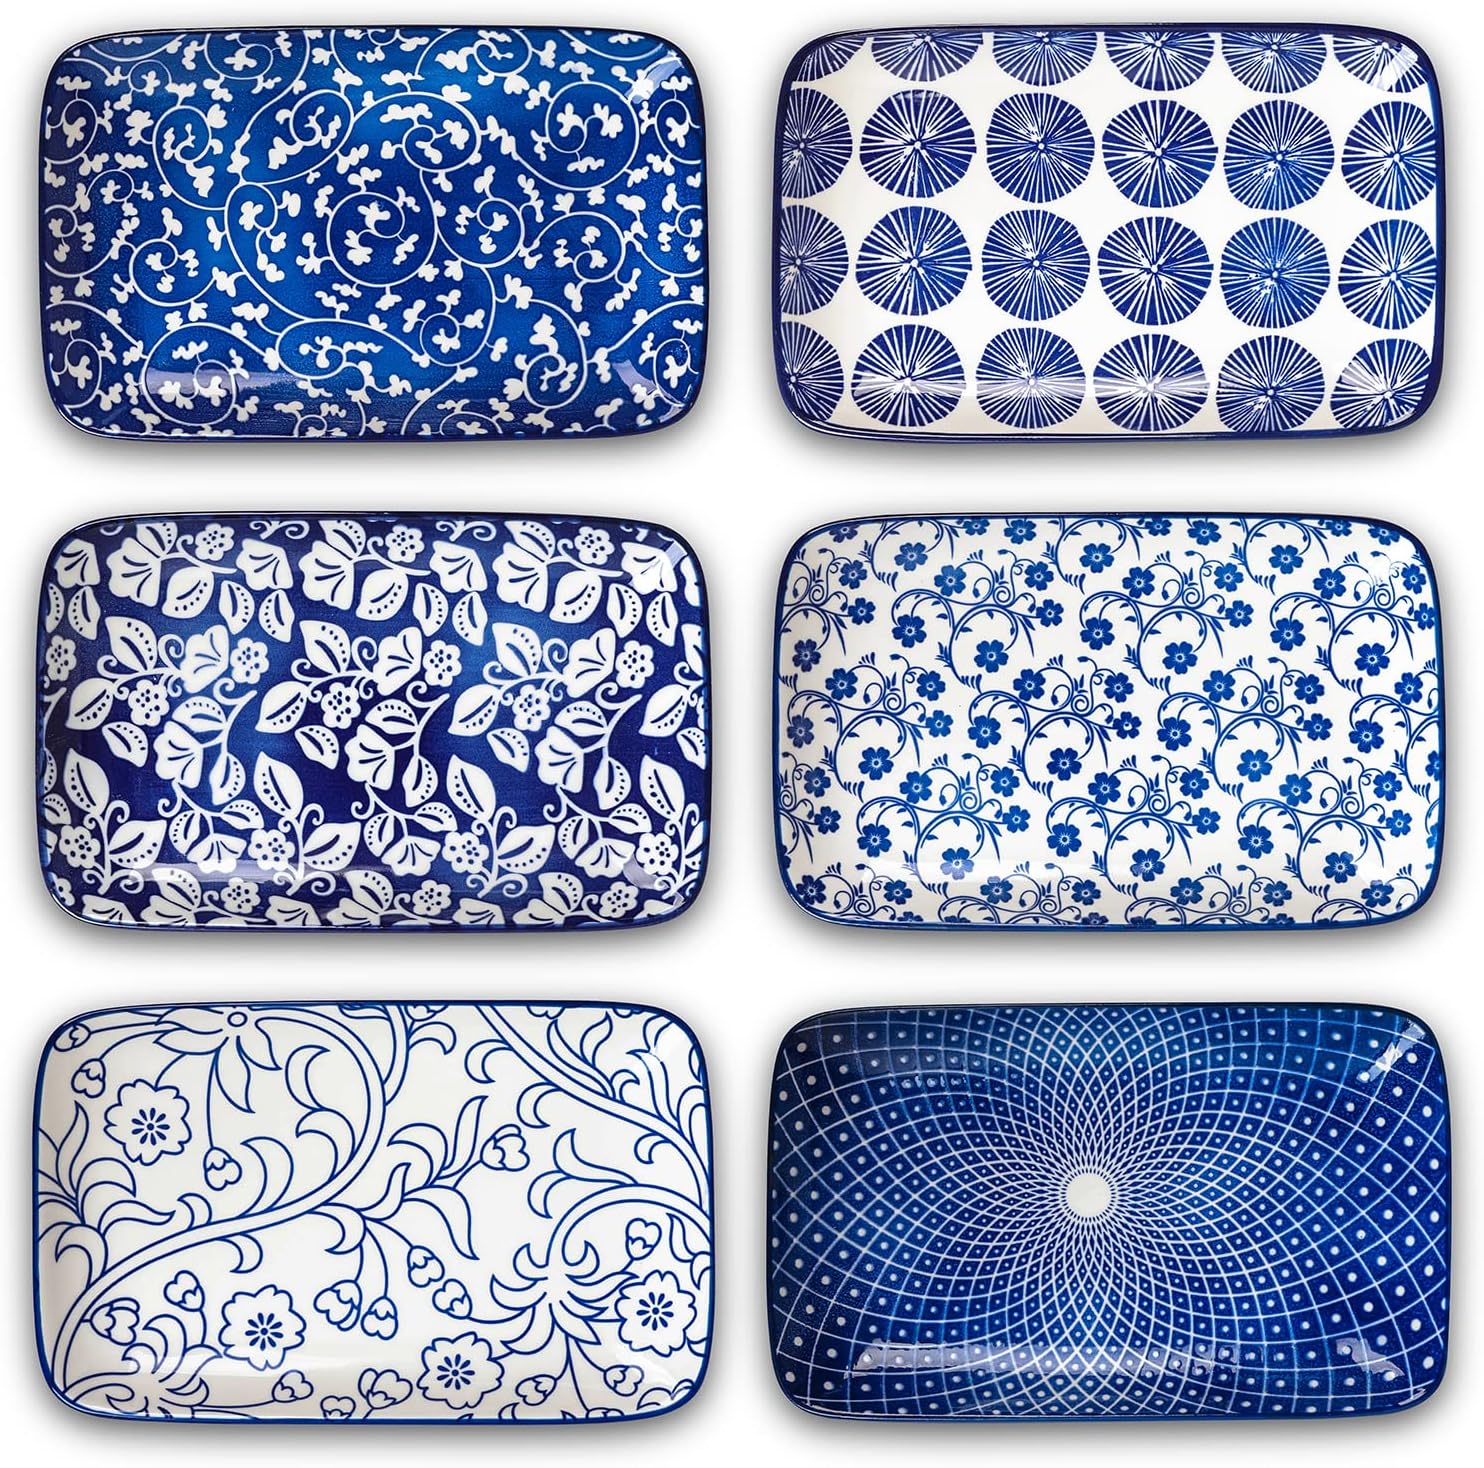 ceramic serveware in blue